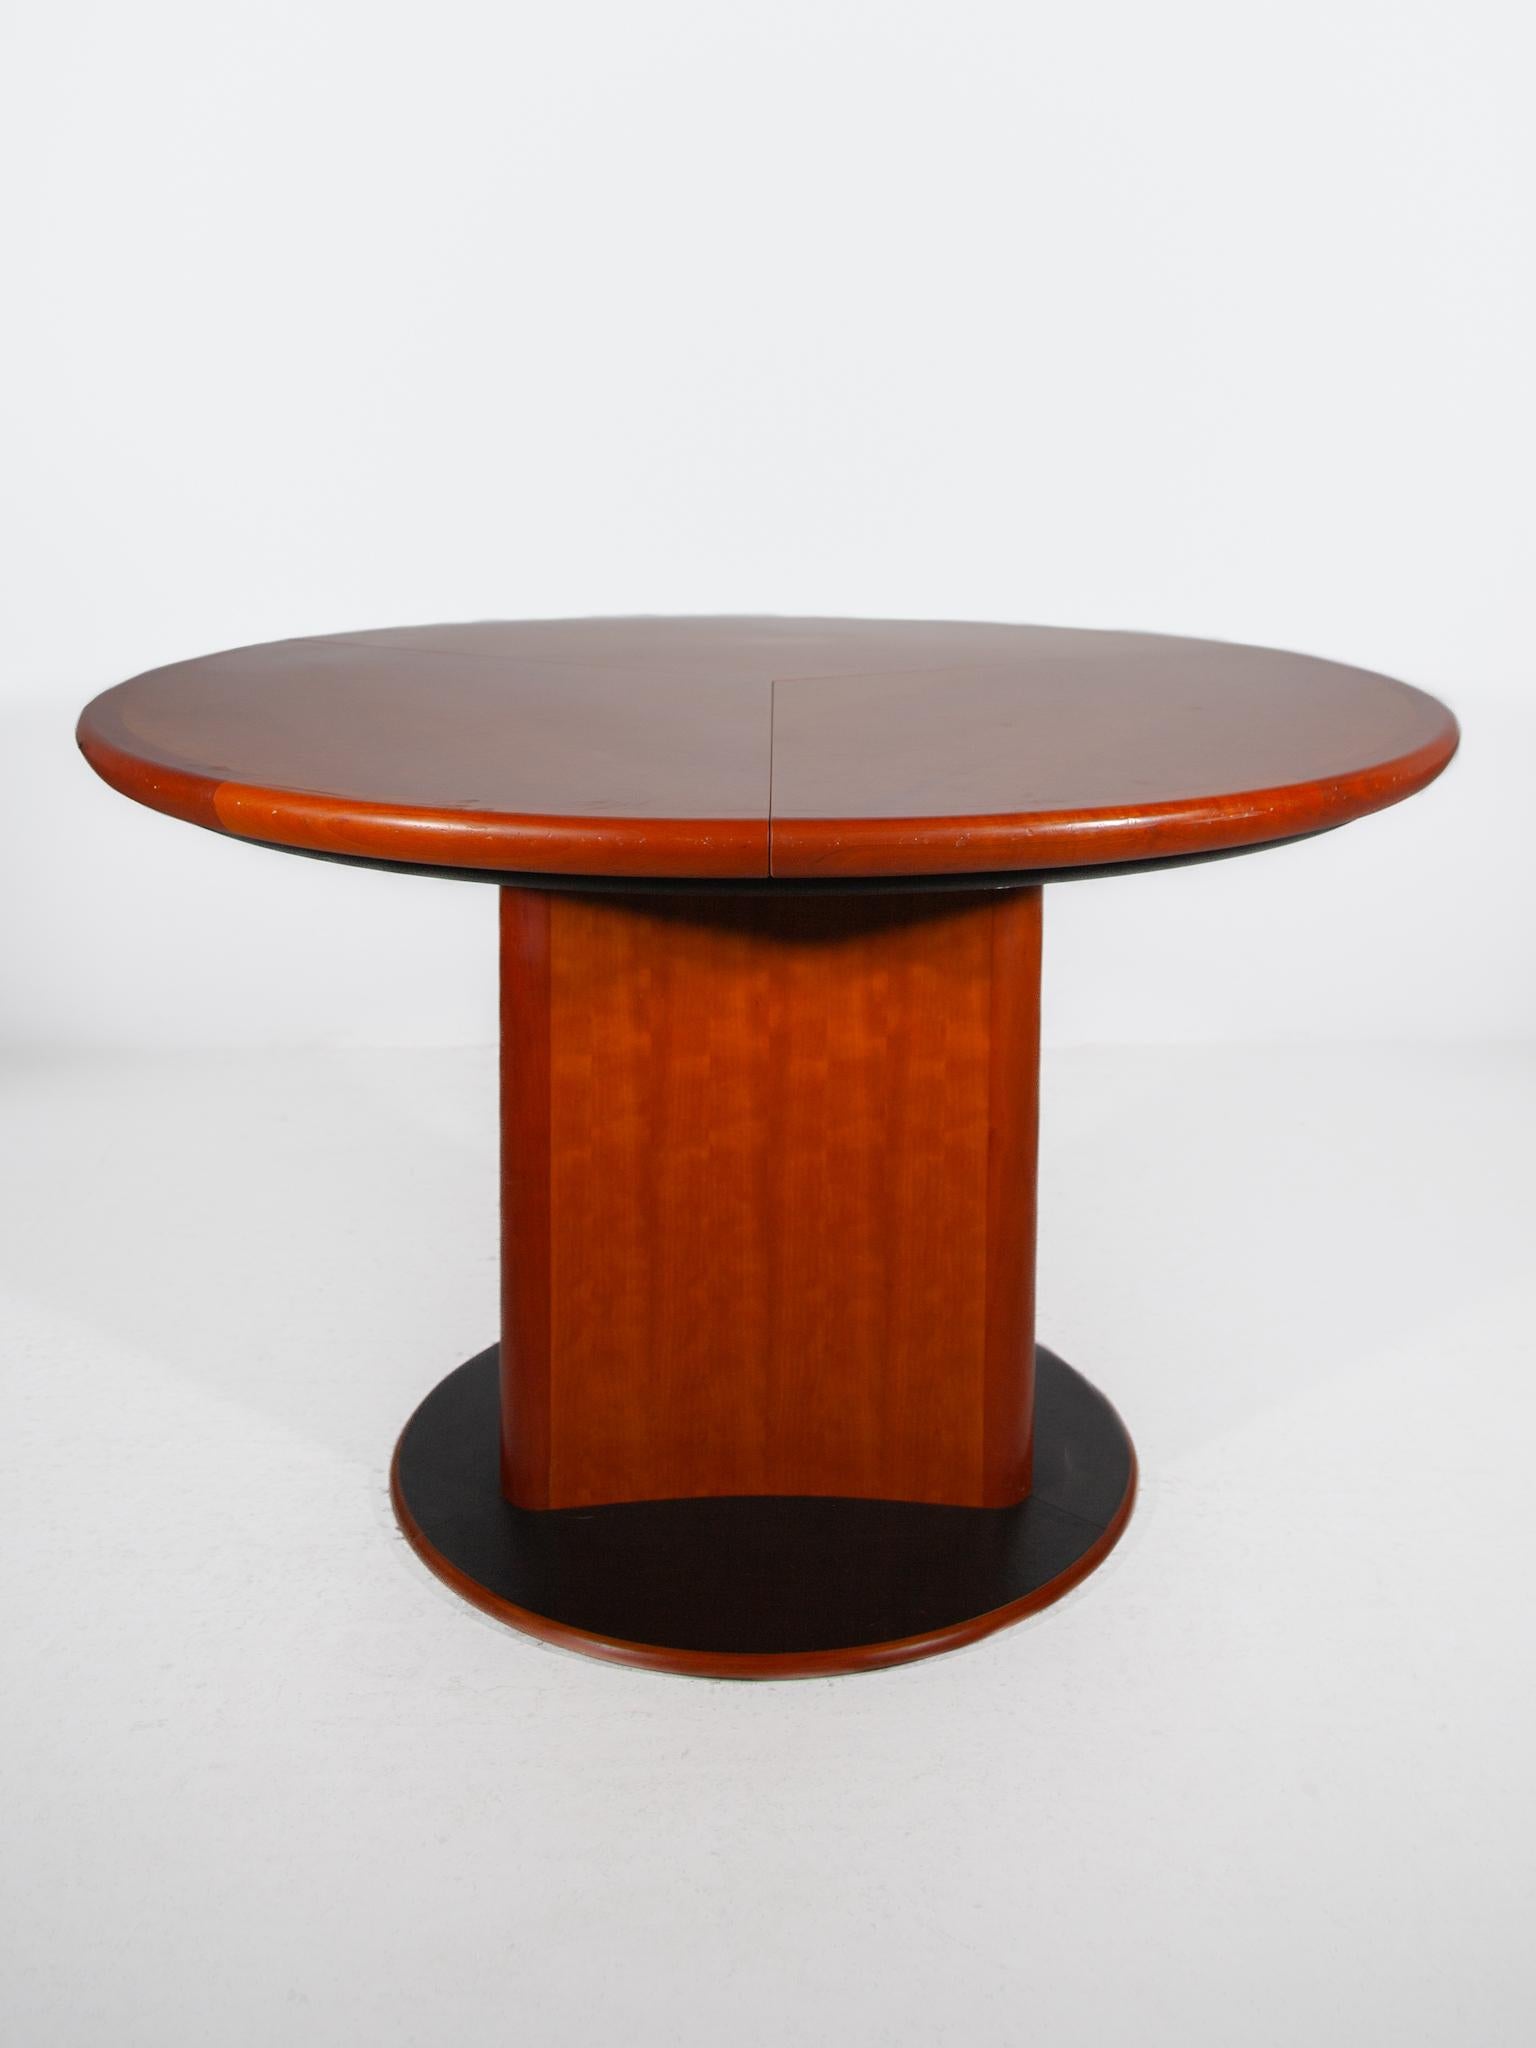 Schöner runder Esstisch, entworfen von Skovby im Jahr 1988, Modell dc06. Der Tisch ist aus Teakholz gefertigt und verfügt über einen gebogenen dreieckigen Sockel und eine runde Tischplatte. Die drei Blätter des Tisches werden von einem